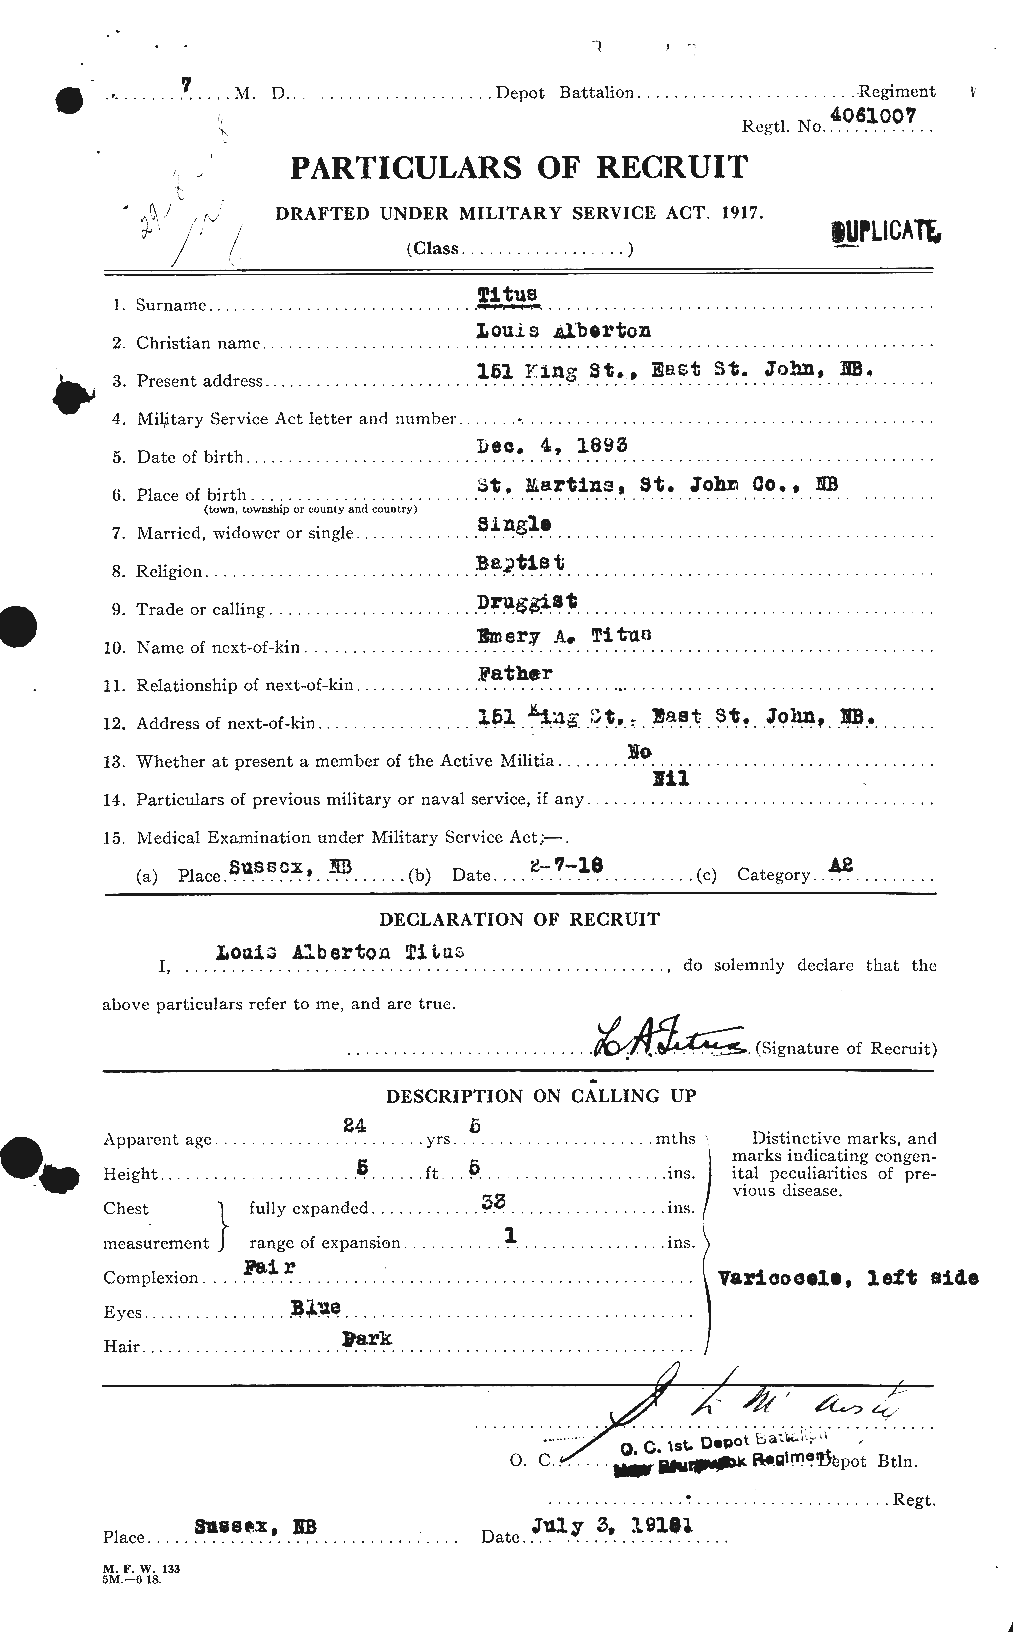 Dossiers du Personnel de la Première Guerre mondiale - CEC 634977a